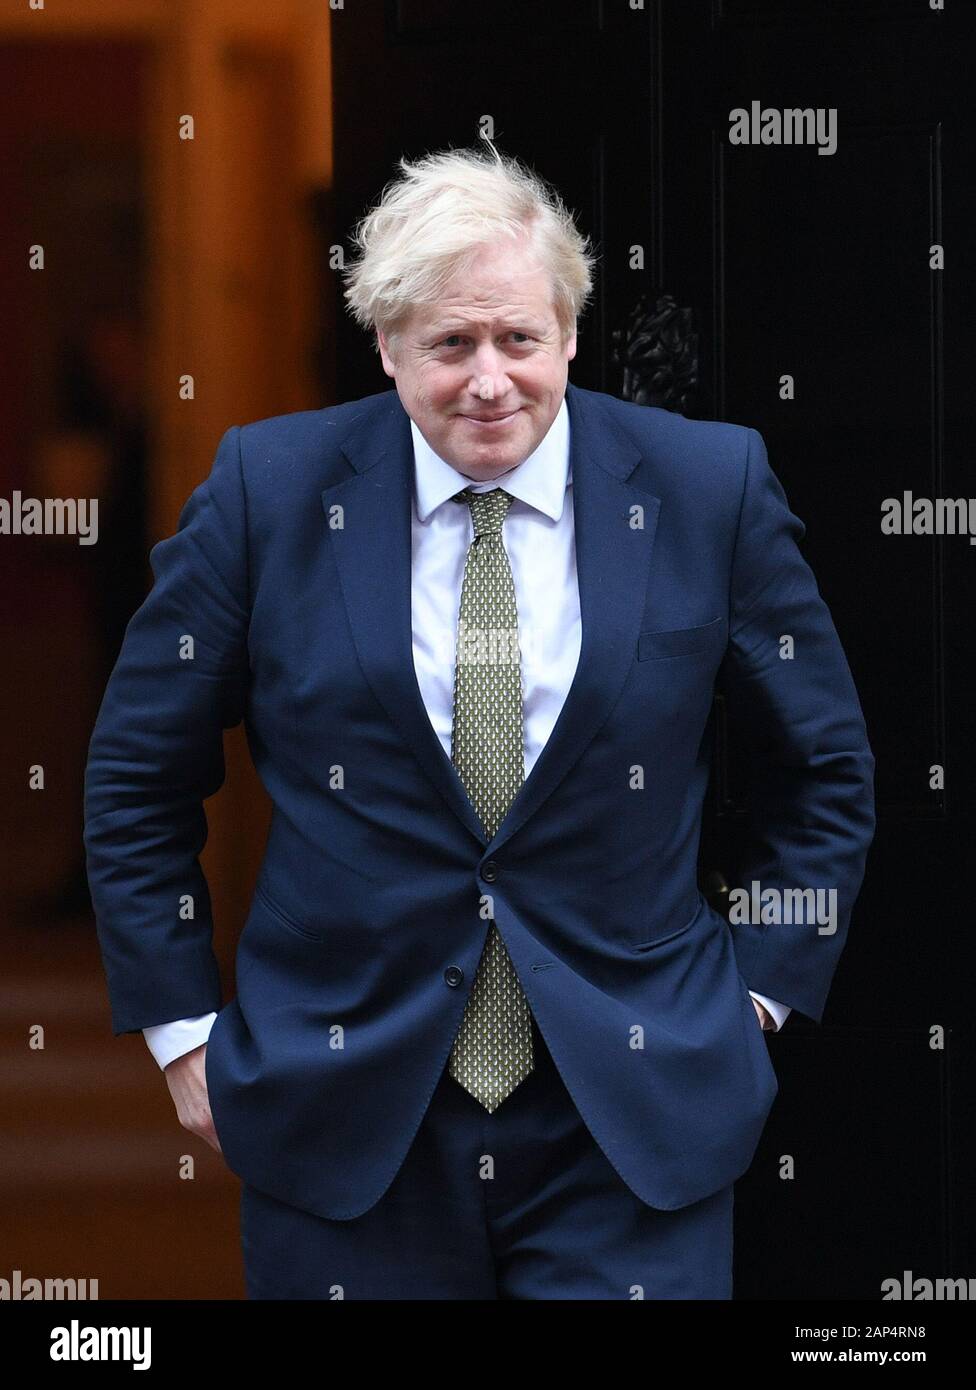 Premier ministre Boris Johnson attend l'arrivée du président égyptien Abdel Fattah al-Sisi à 10 Downing Street, Londres, pour réunion bilatérale. Banque D'Images